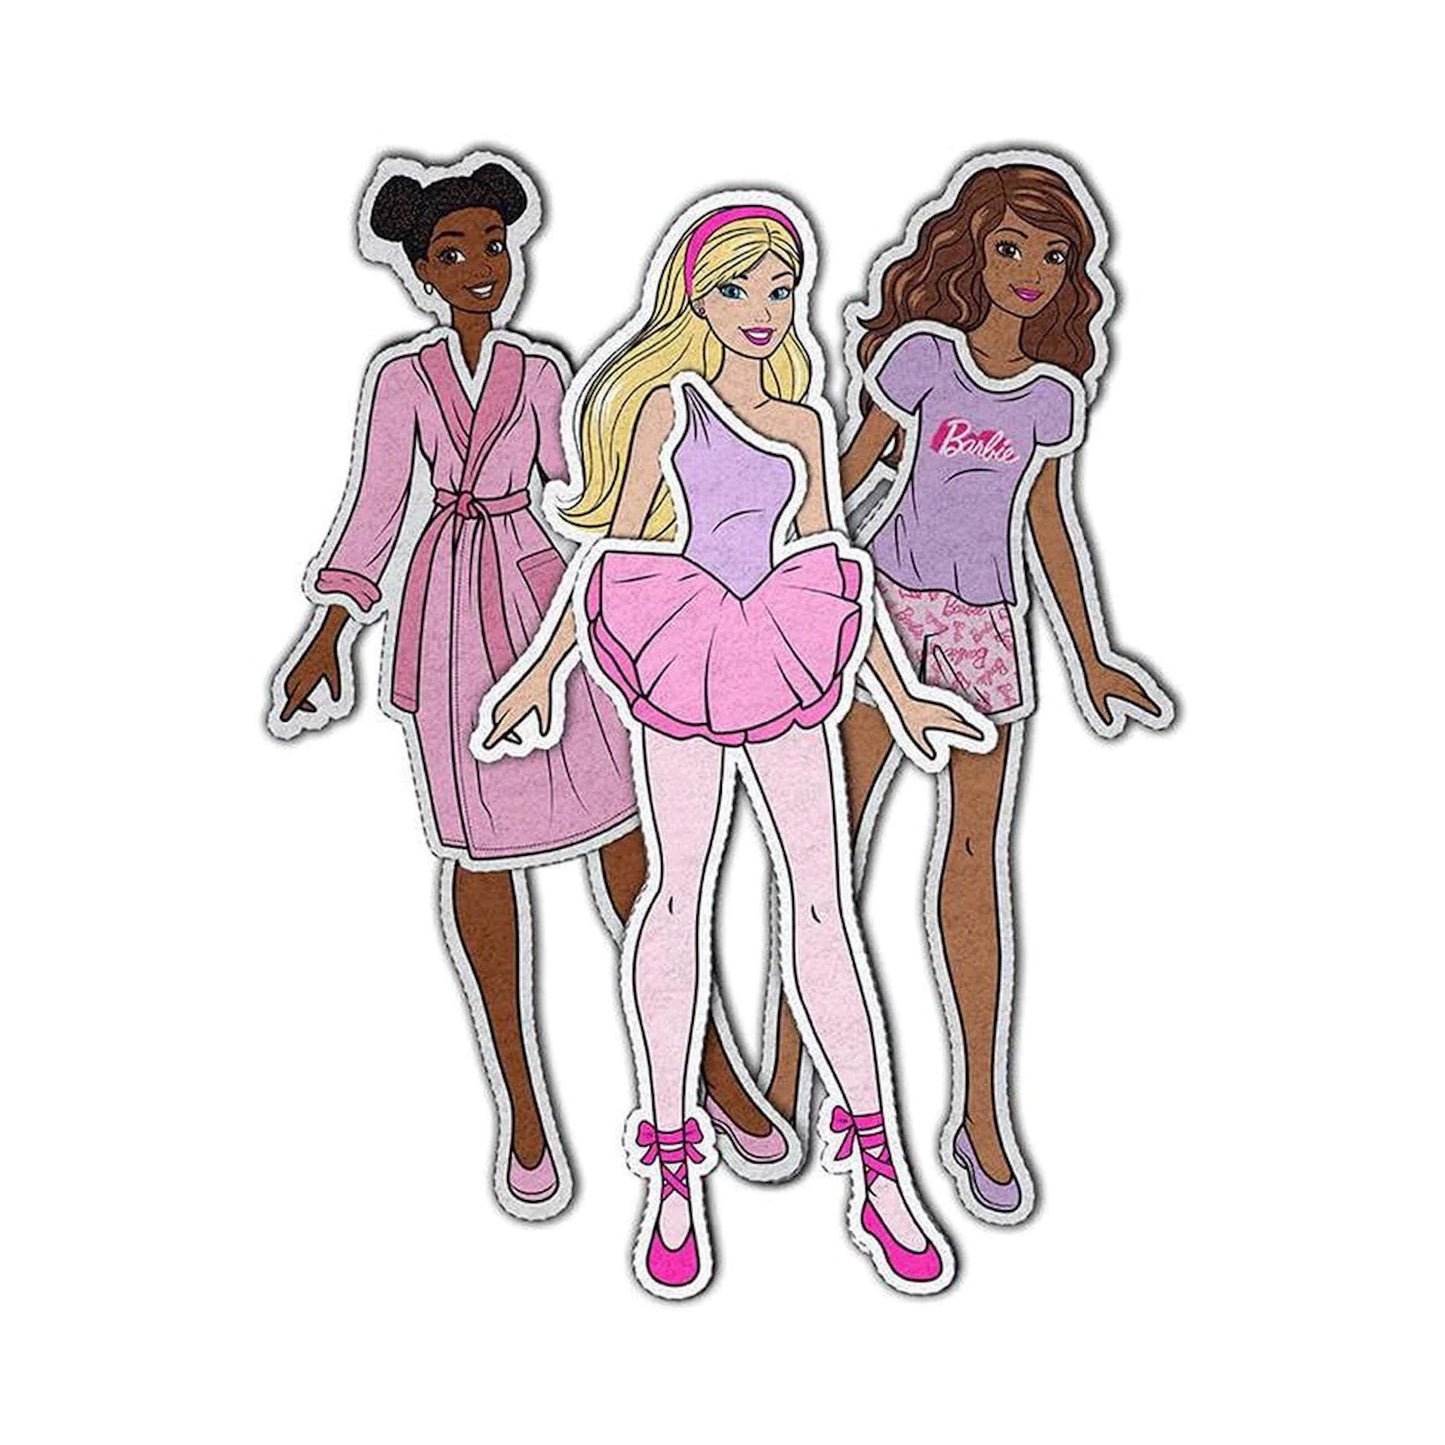 Barbie Girl DreamHouse Pack & Play Felt Panel